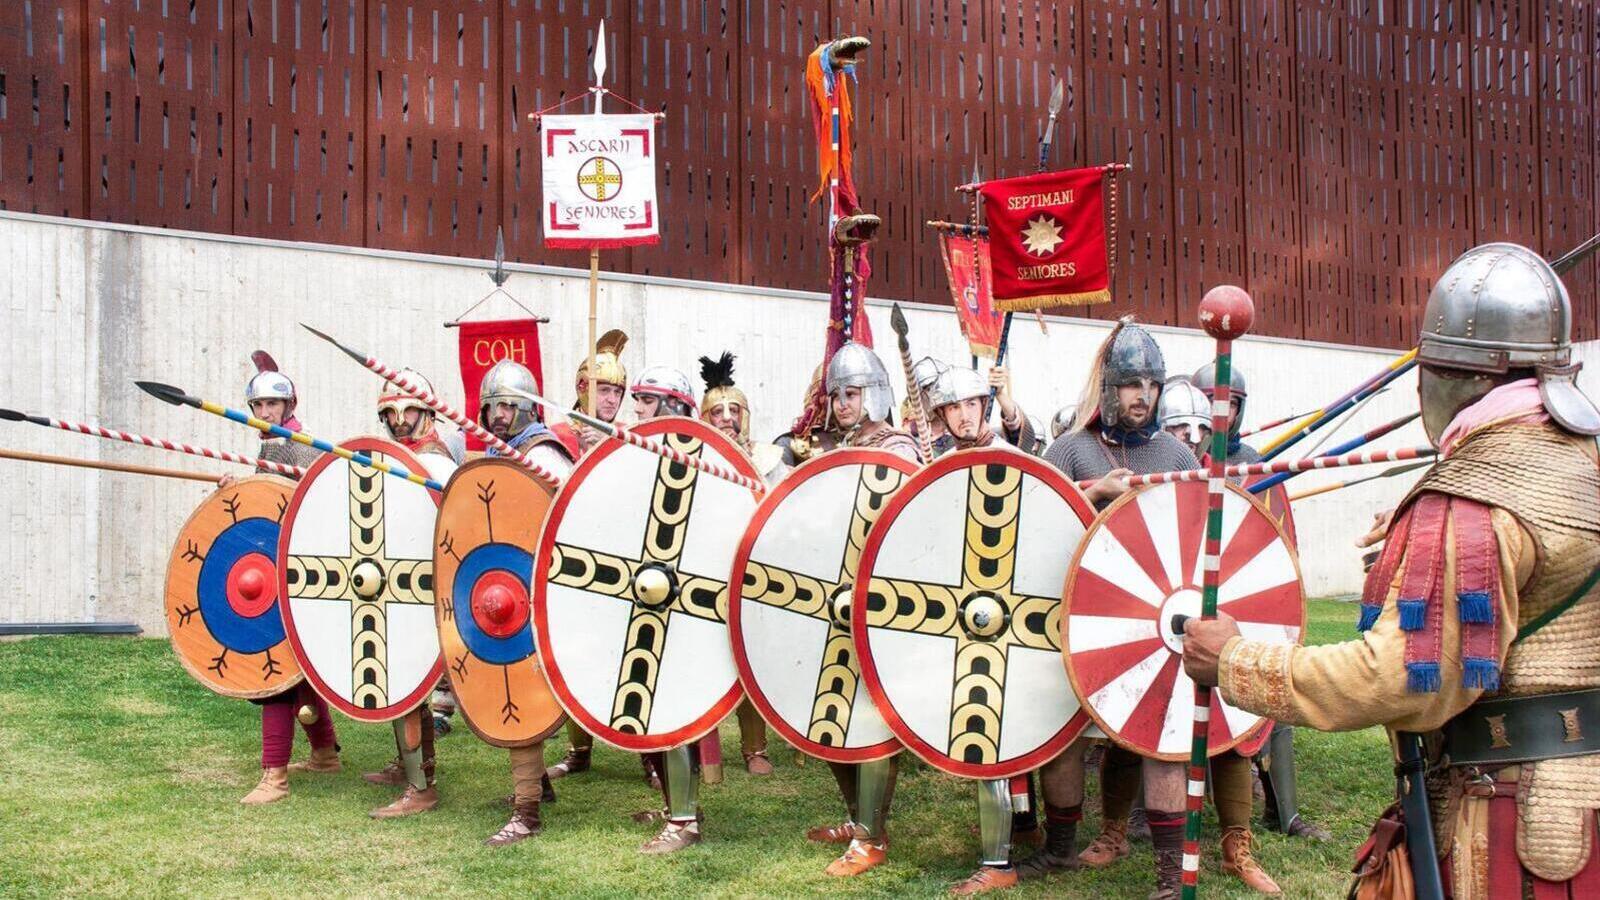 recreación histórica de tiro con arco romano a cargo de la cohors prima celtiberorum en la villa romana la olmeda los días 8 y 9 de julio